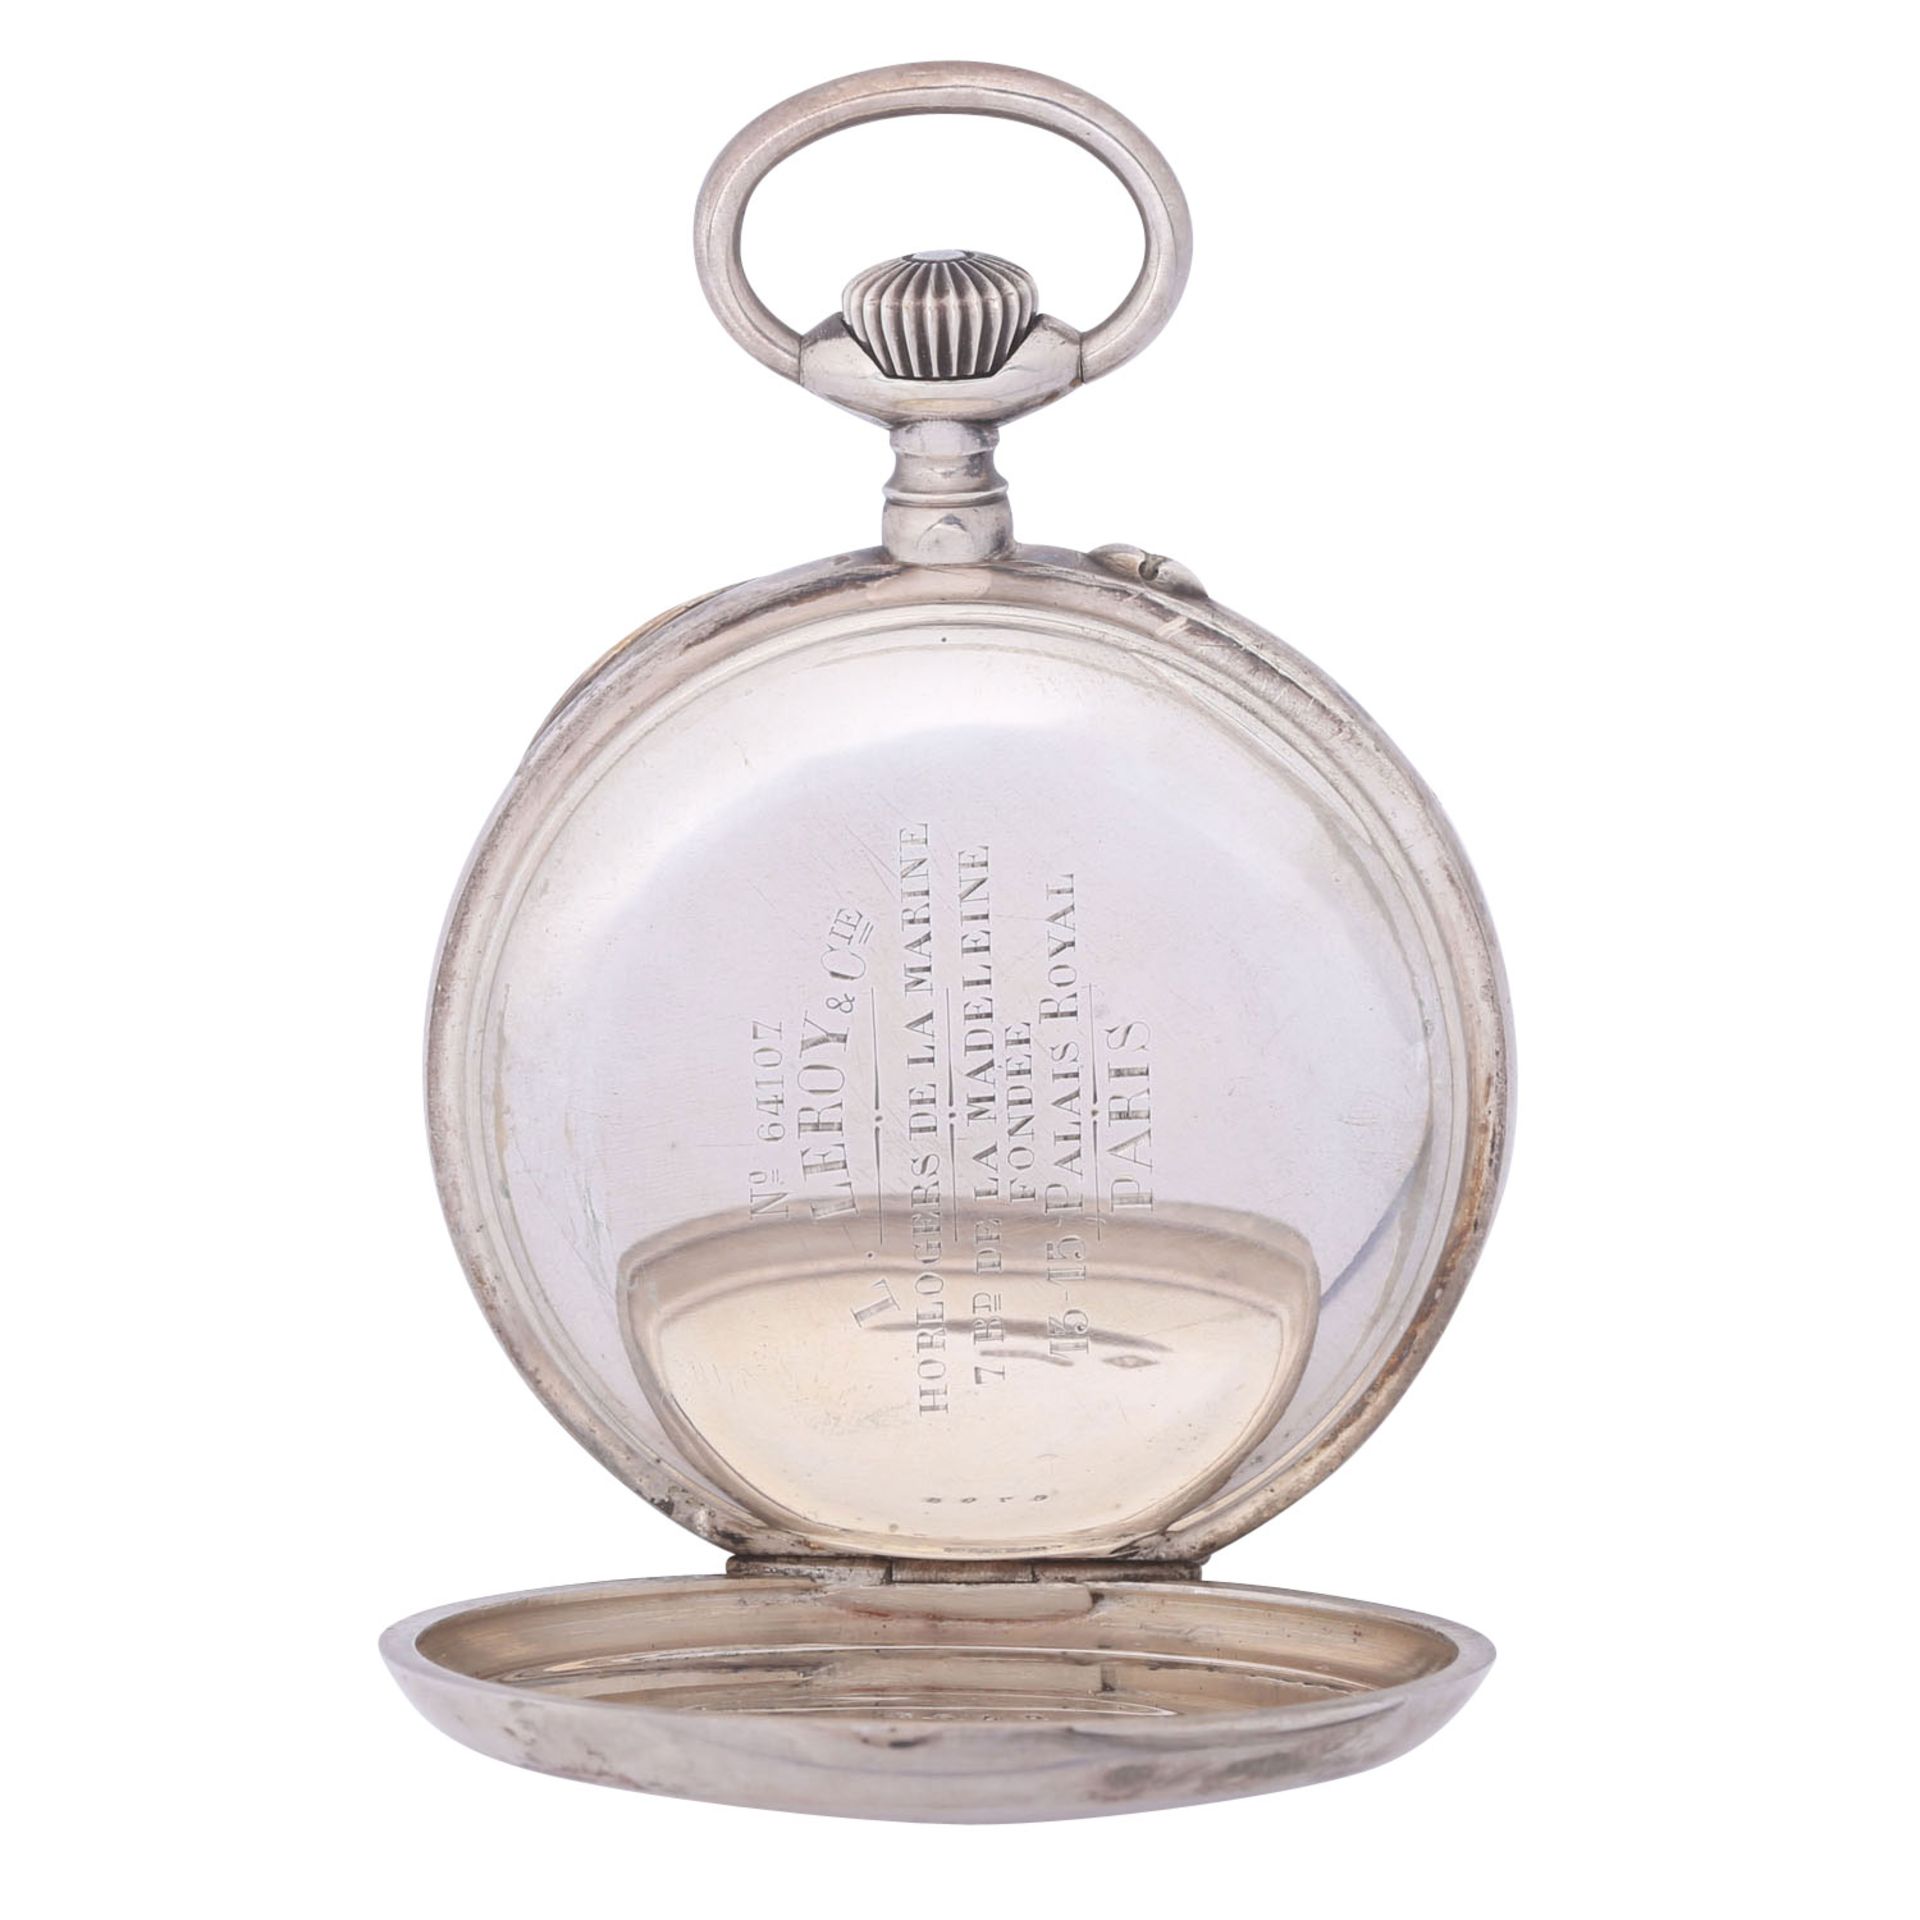 L. LEROY & Cie. Paris sehr seltener, großer und schwerer Taschenuhr Chronometer. Frankreich. - Image 3 of 12